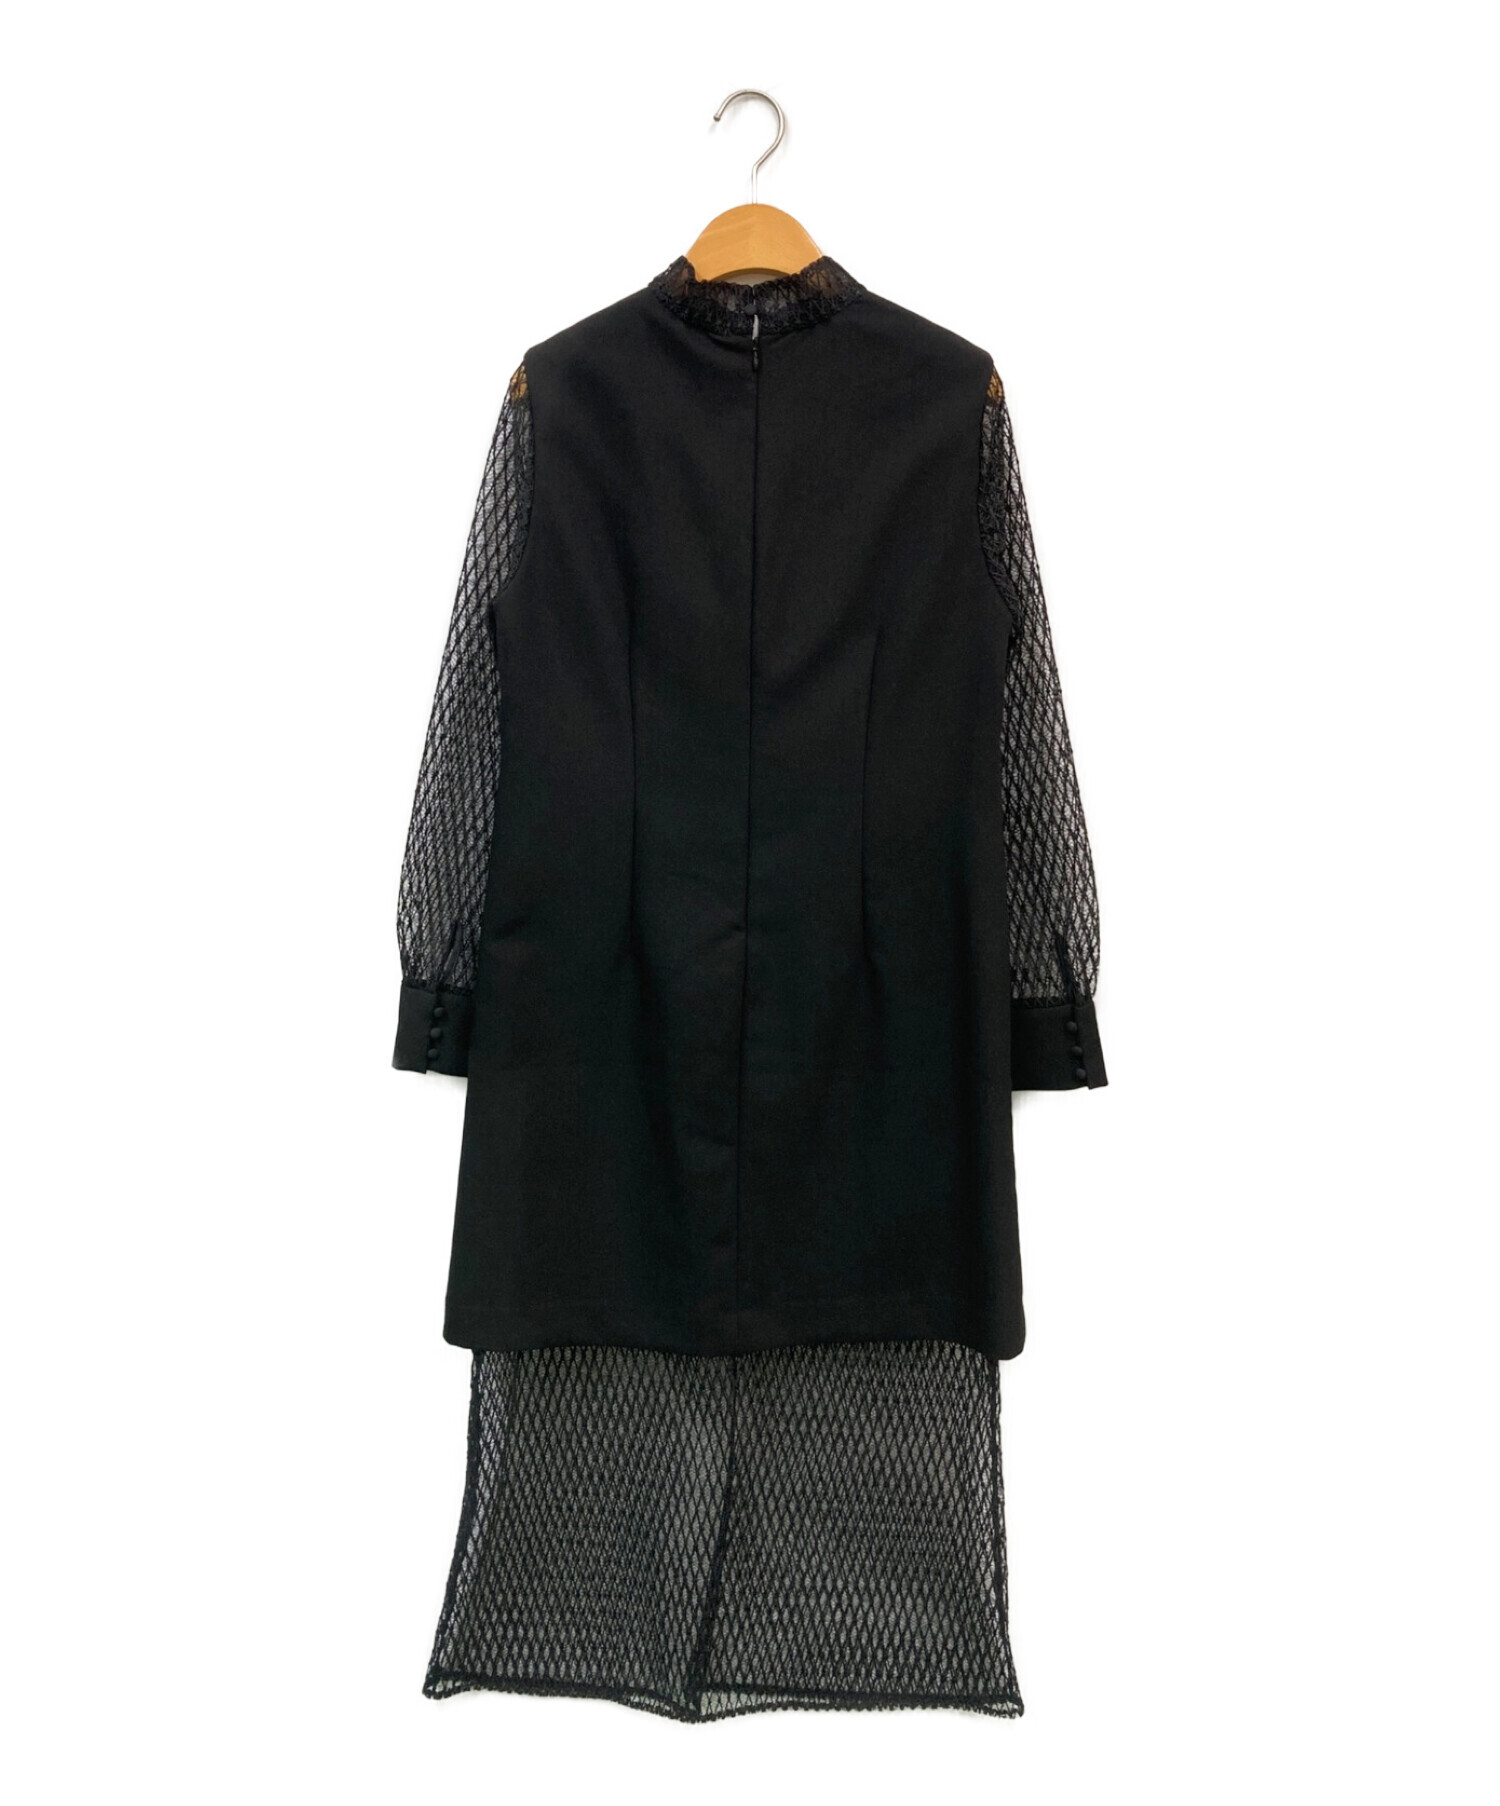 AMERI (アメリ) MELON SLEEVE STRAIGHT DRESS ブラック サイズ:M